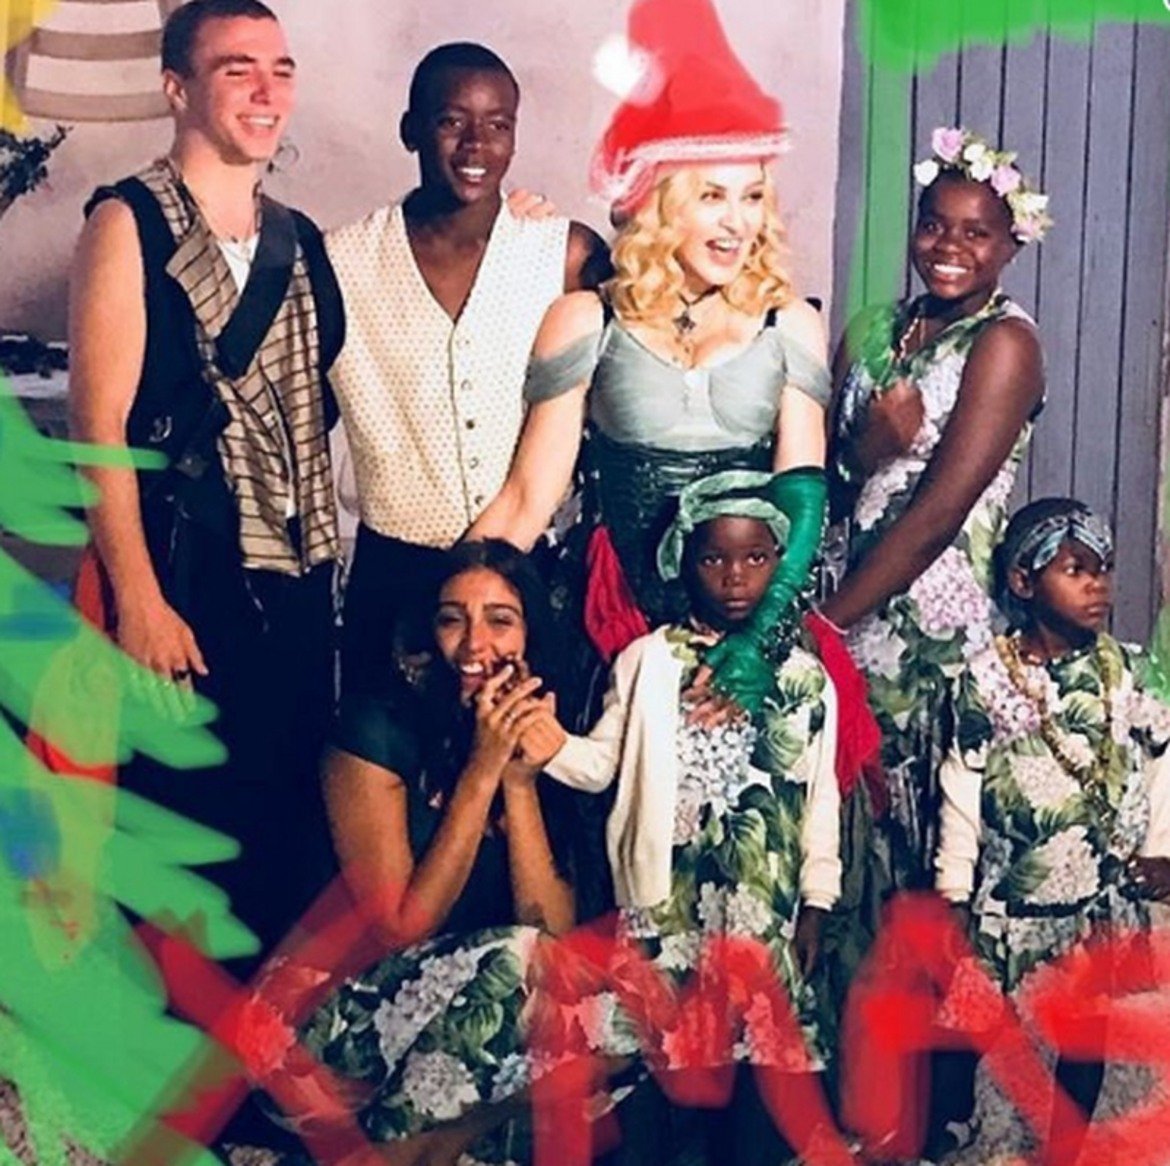 Мадона тази година по-скоро отби номера, тъй като публикува стара снимка с всичките си шест деца, четири от които са осиновени. Набързо нарисуваната коледна шапка и елха не променят факта, че снимката е от фотосесия за 59-ия рожден ден на певицата.